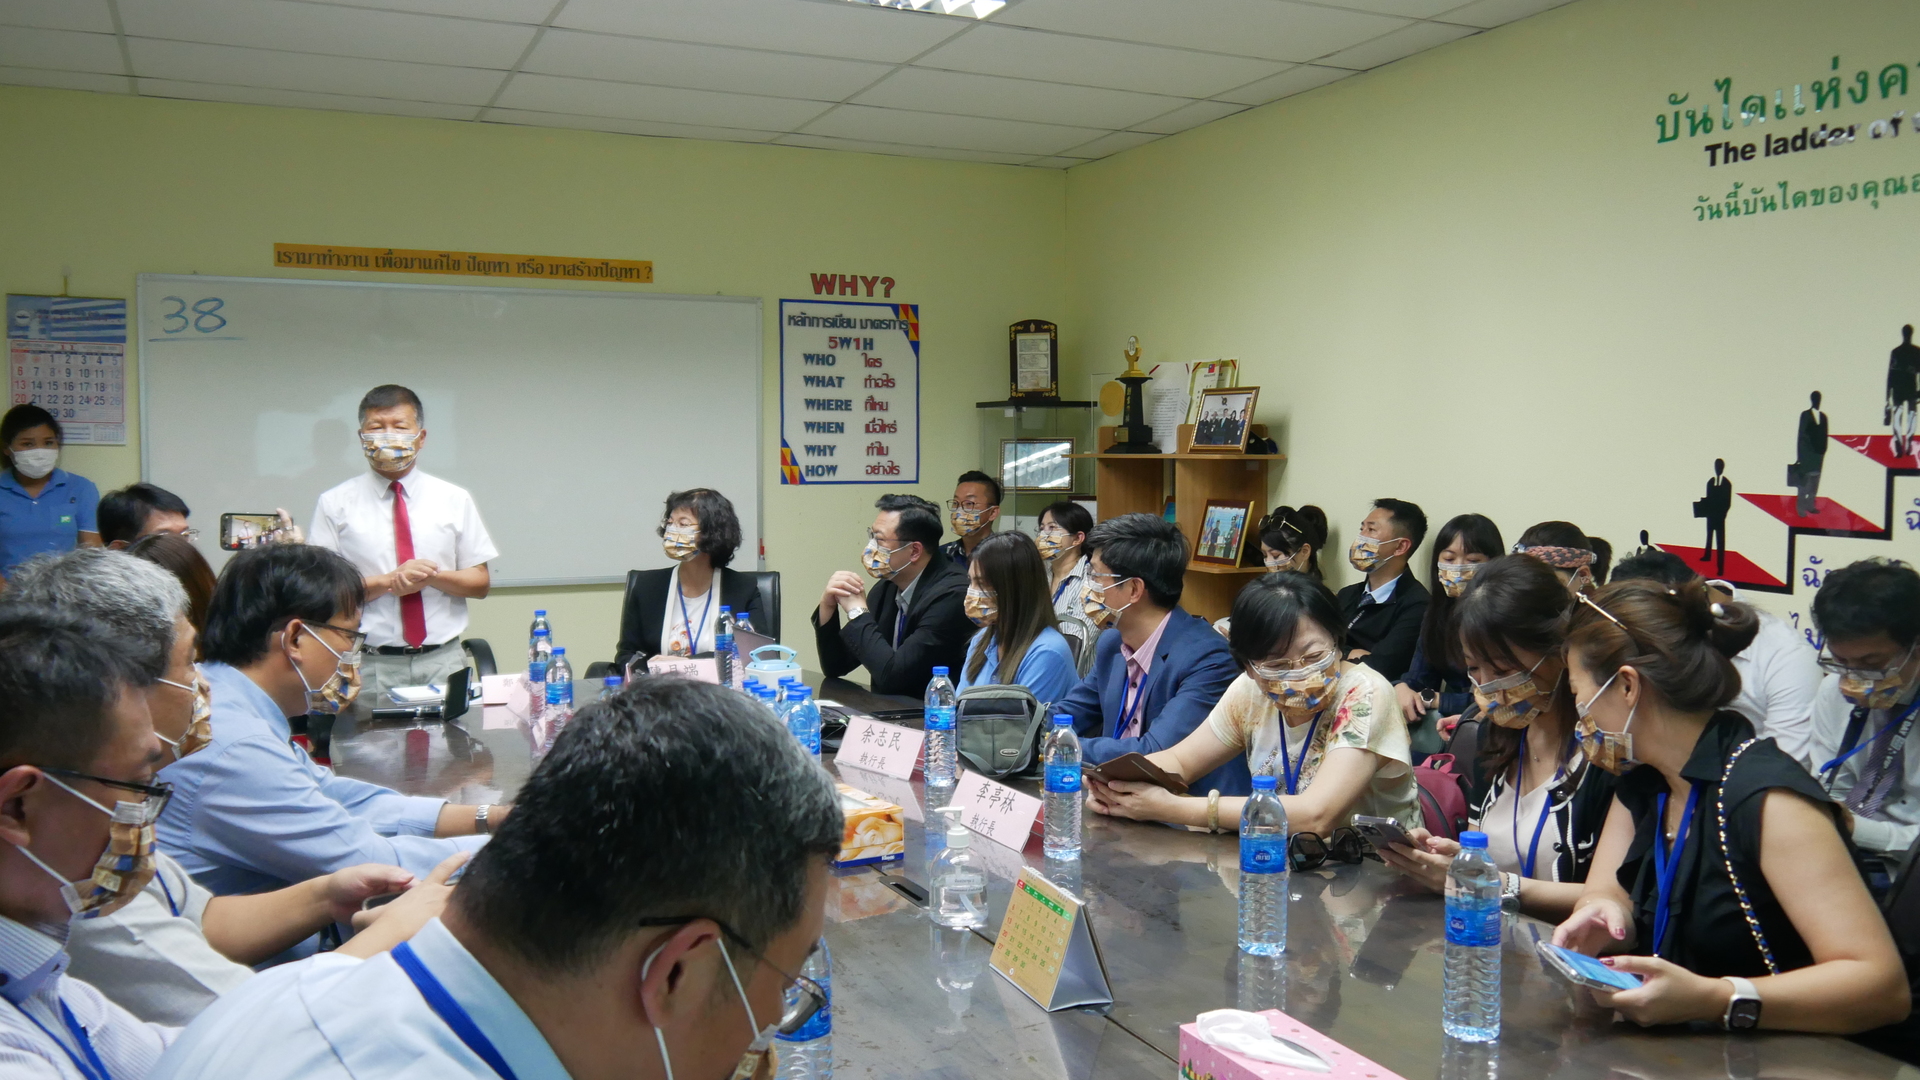 高雄大學EMBA 泰國企業參訪 全台首發11